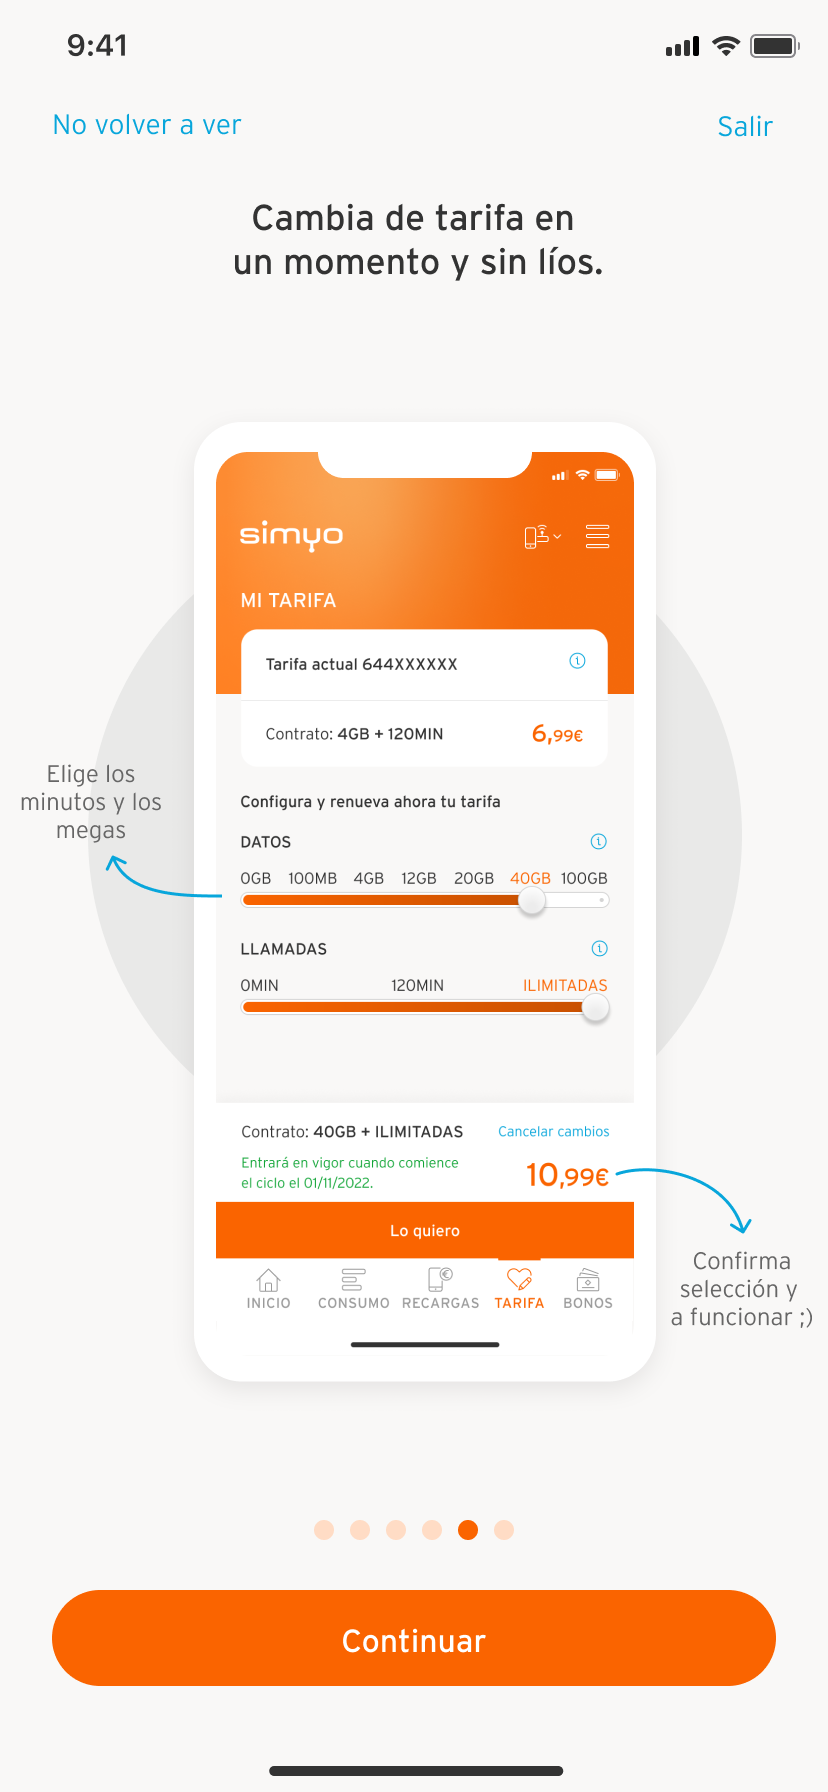 Muestra pantalla de la APP móvil de Simyo en la sección de consulta tus facturas